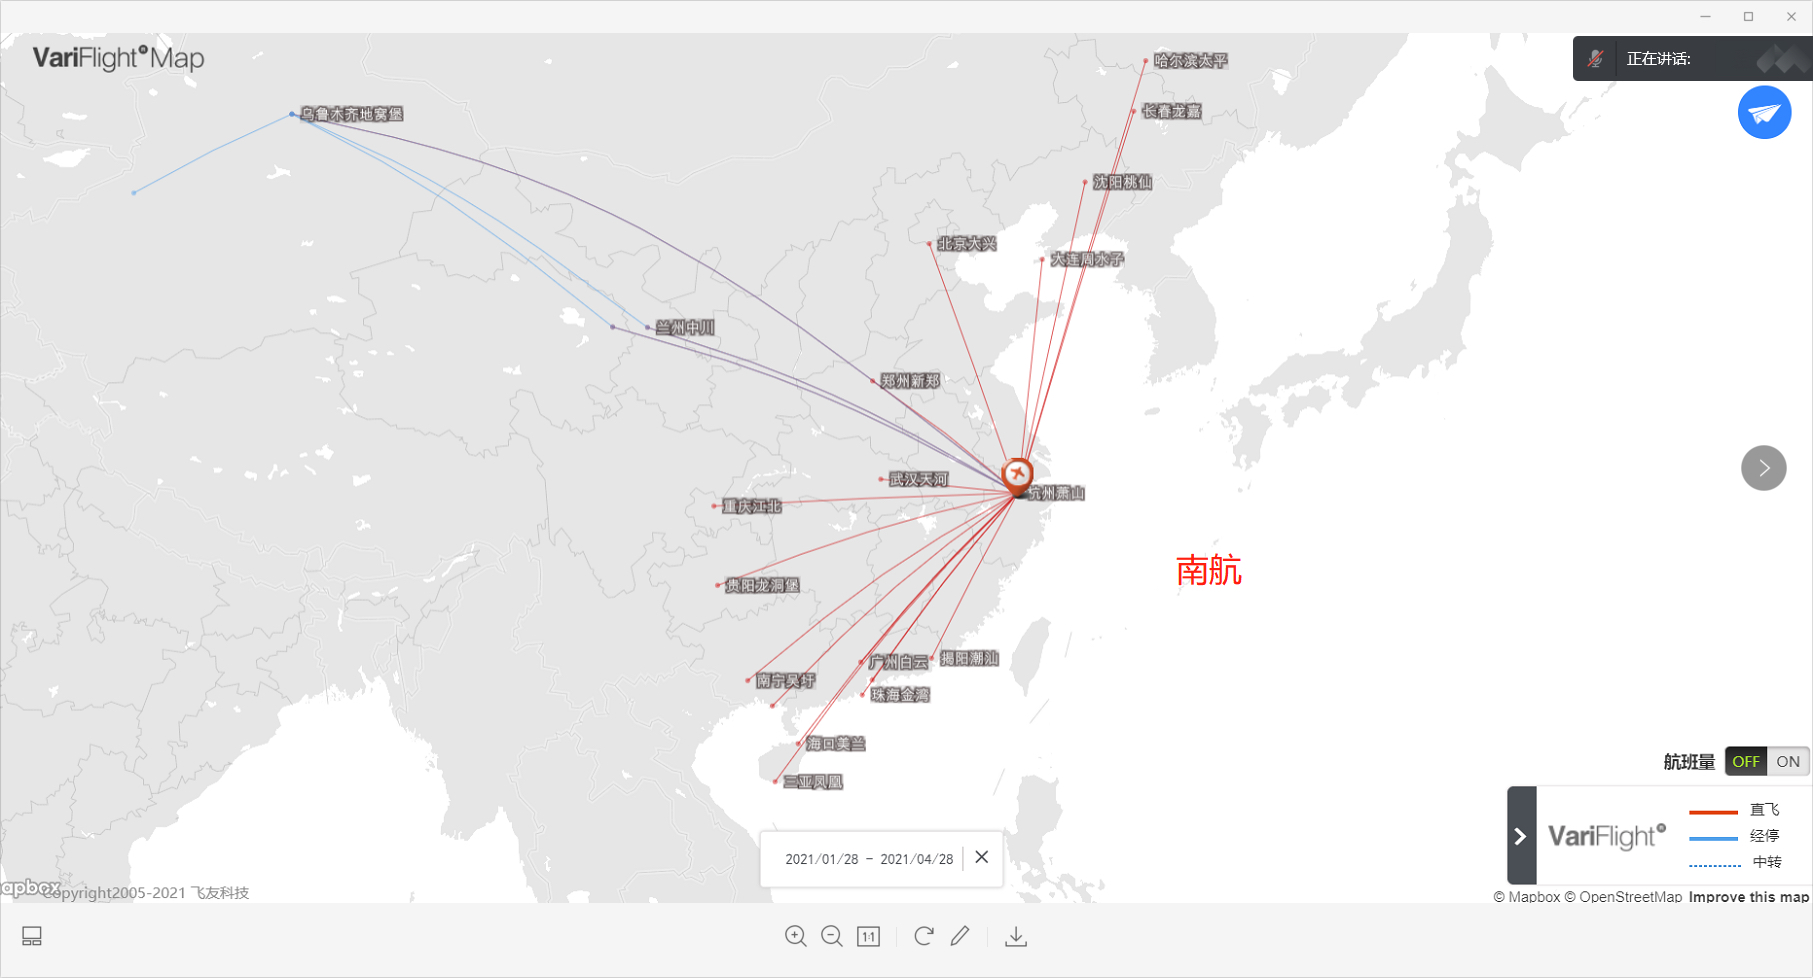 0571杭州攒哪家里程,hgh出发国航,东航,南航,海航航线